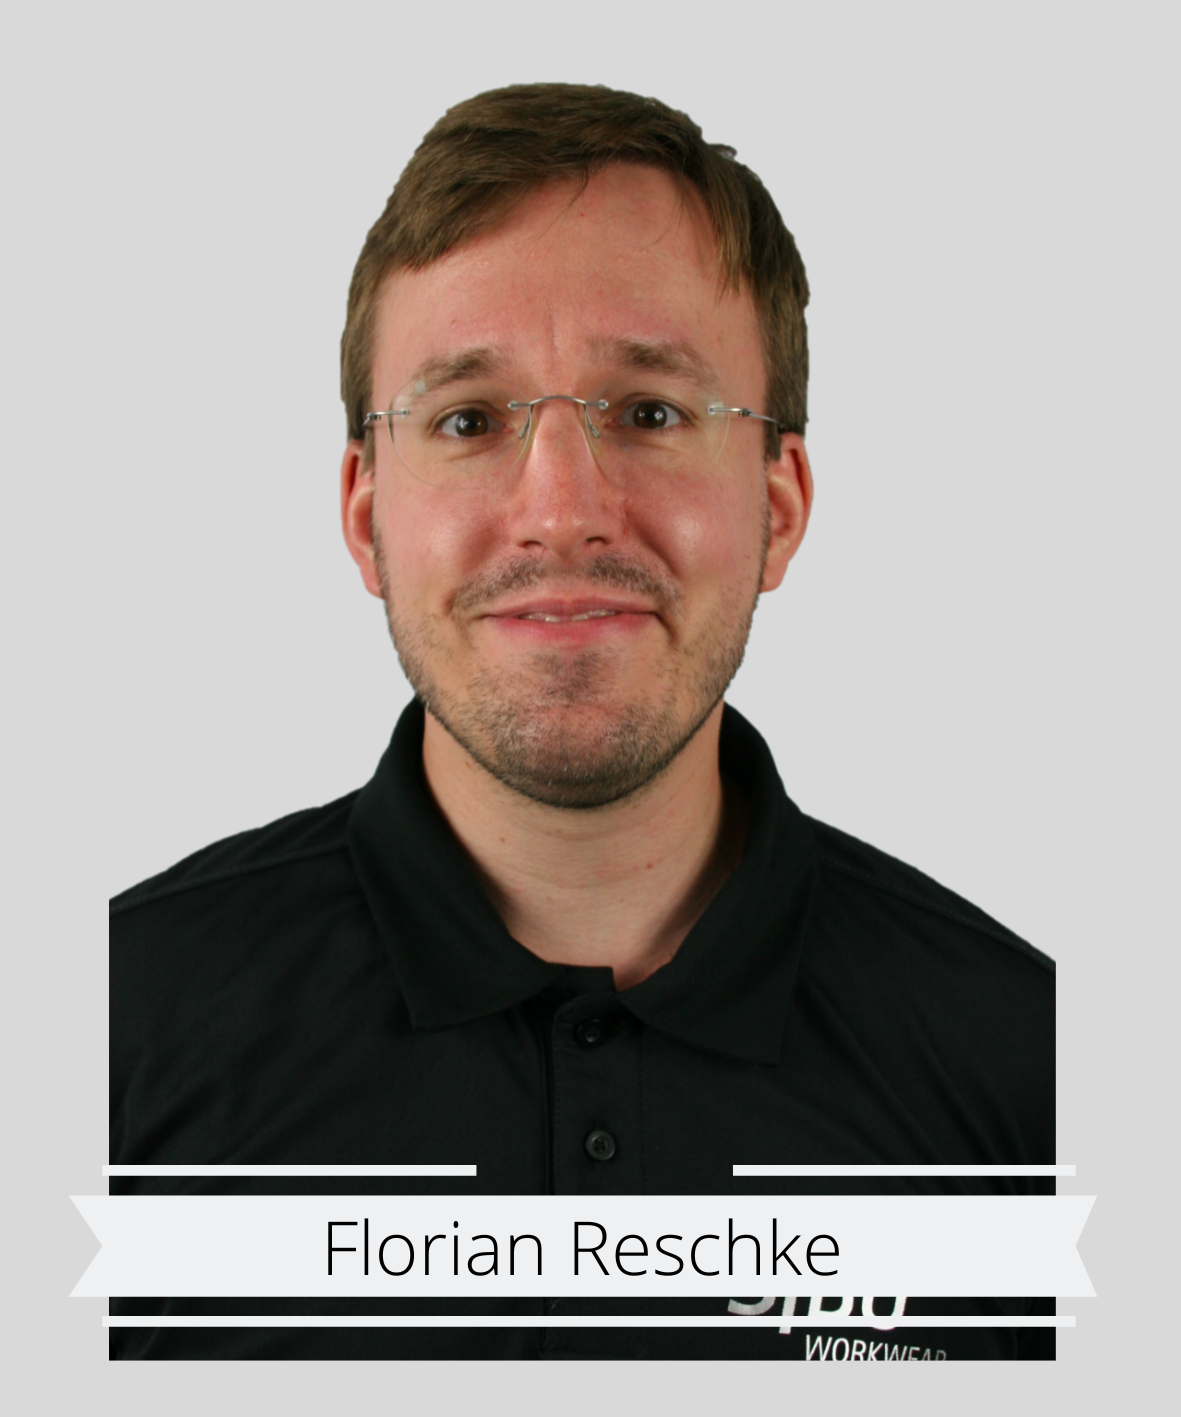 Florian Reschke